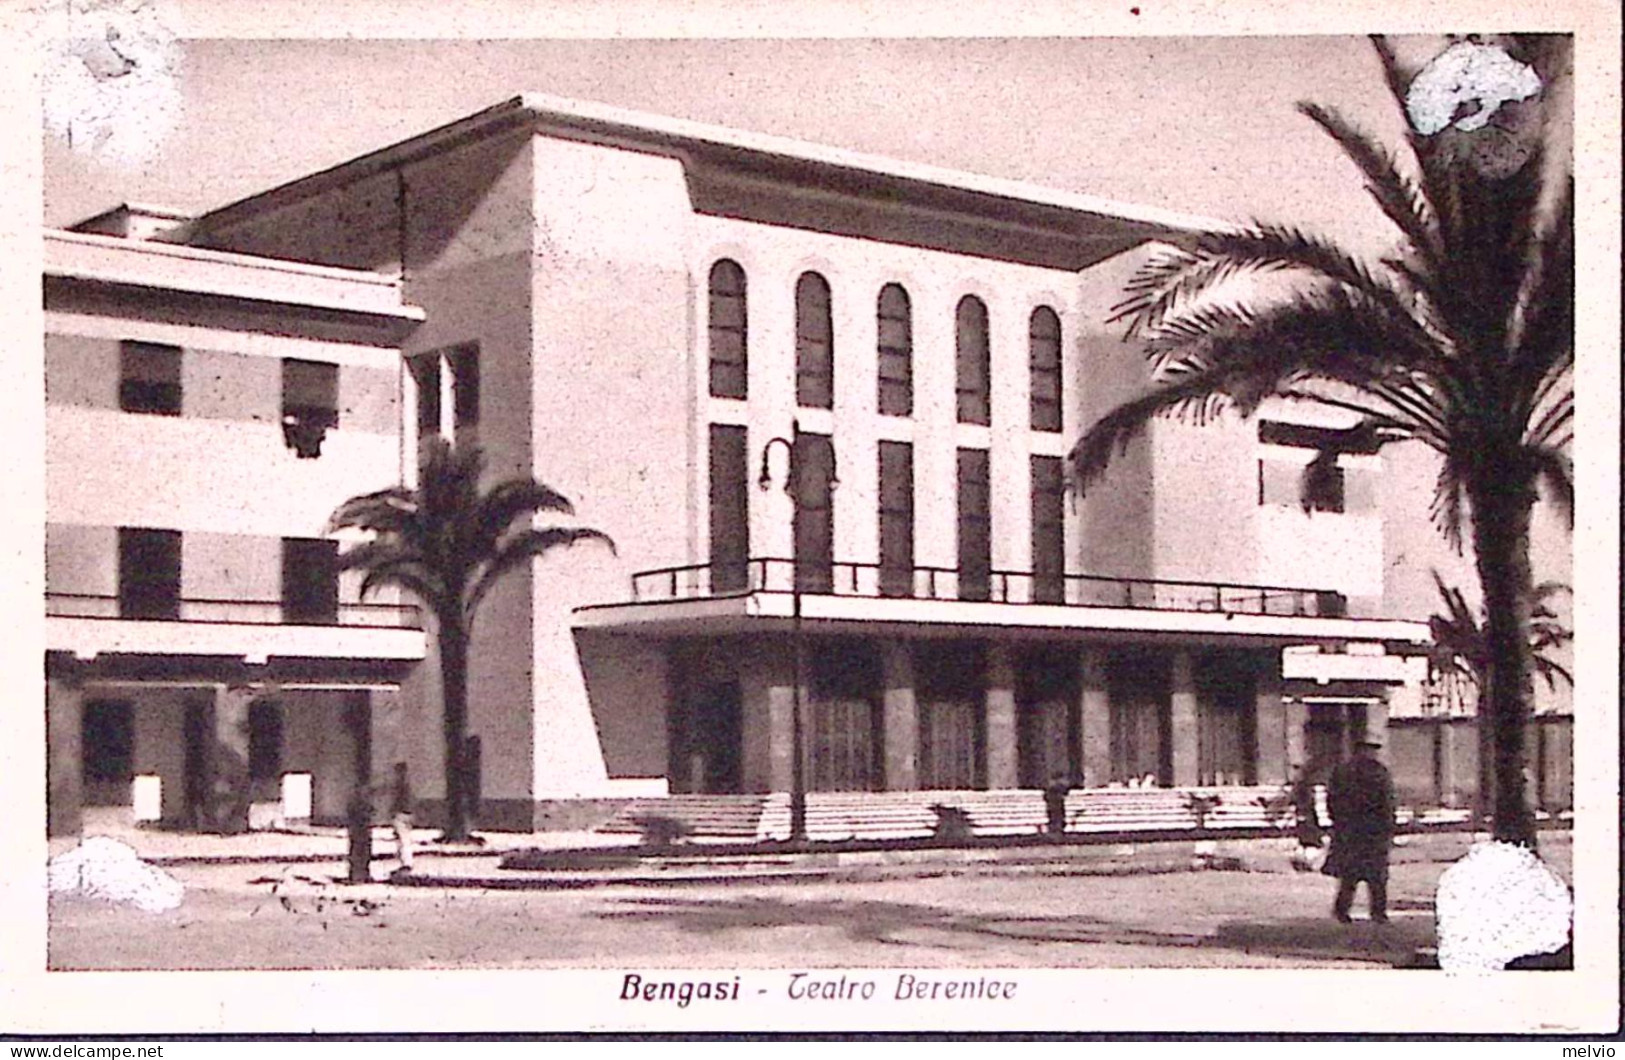 1934-BENGASI Teatro Berenice Viaggiata Bengasi (21.6) Affrancata Libia C.20 - Libia